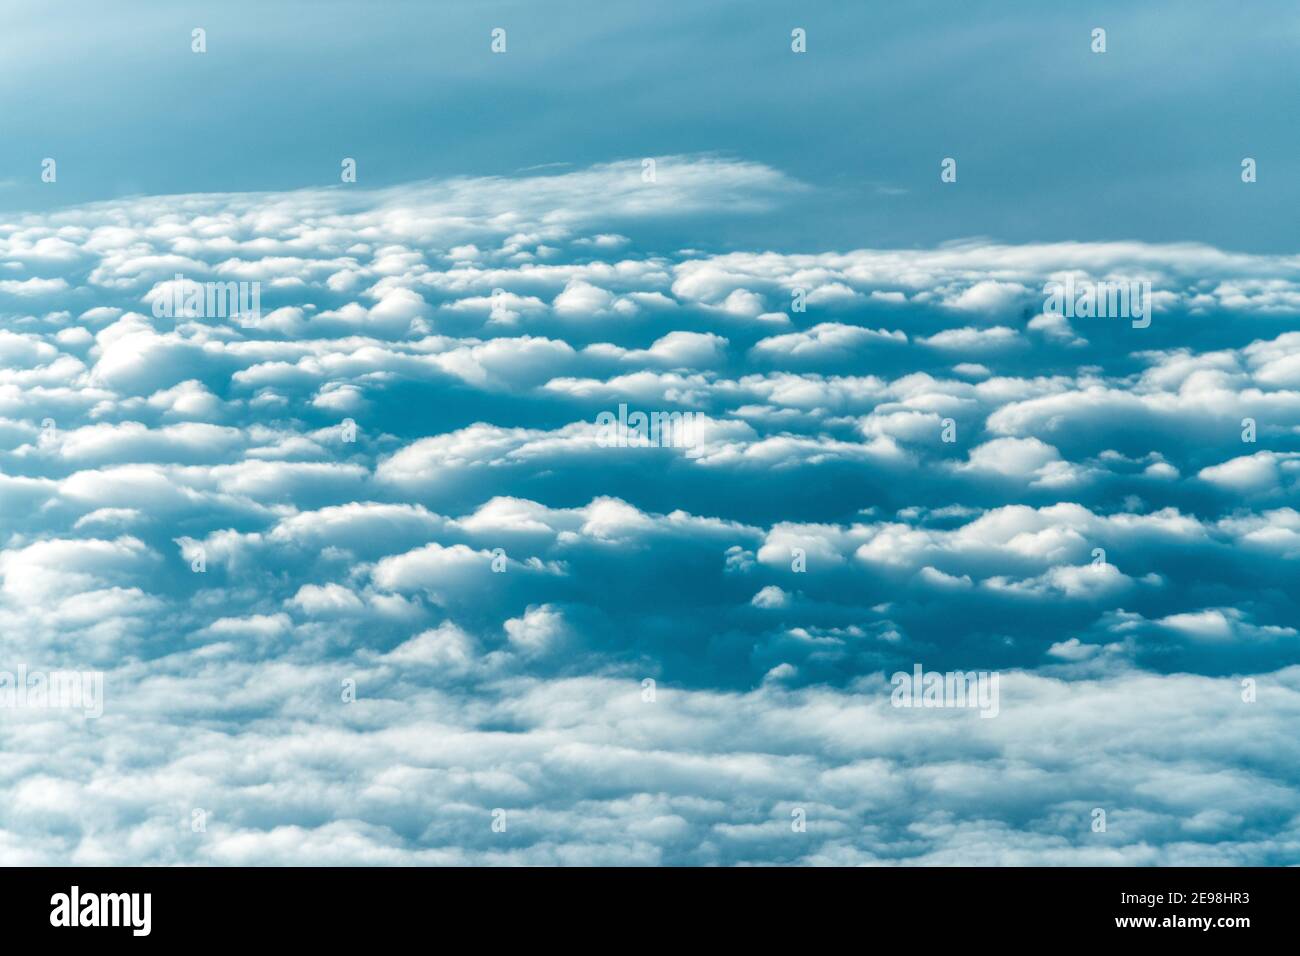 Motif de nuages vu d'une vue en grand angle. Image en tons Banque D'Images